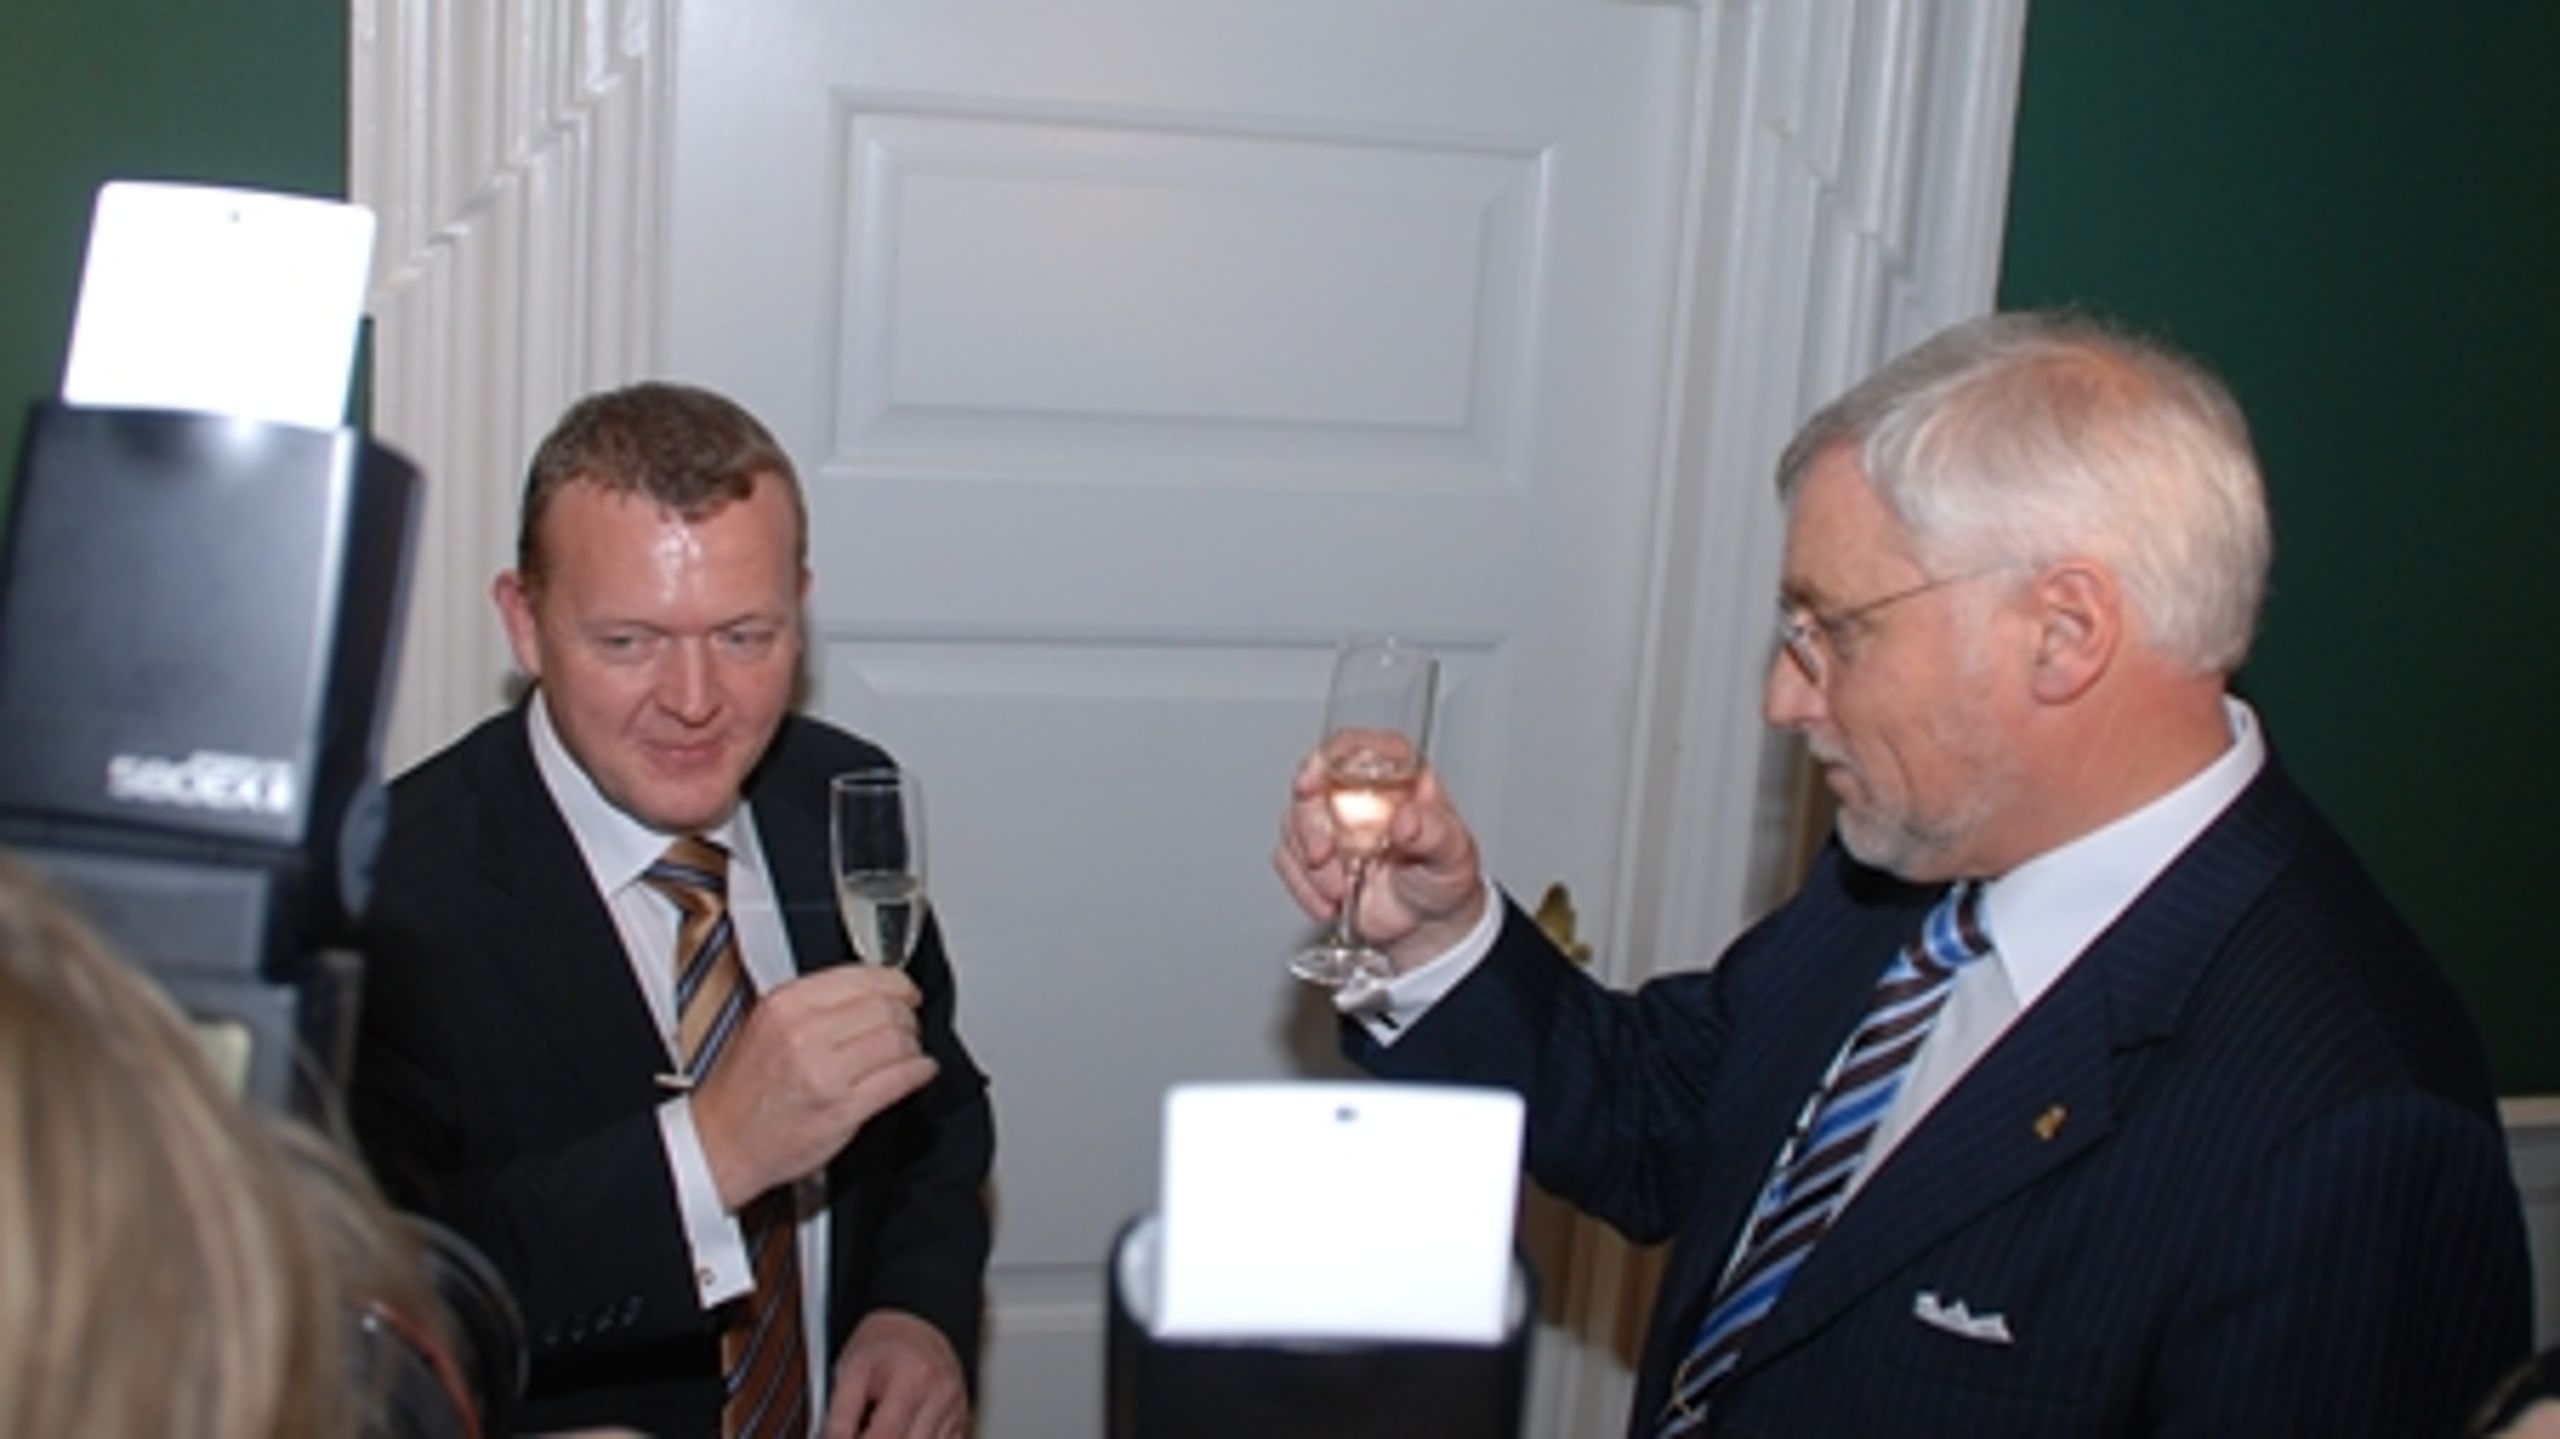 Thor Pedersen sk&#229;ler med Lars L&#248;kke Rasmussen ved overdragelsen af finansministerposten fra den ene Venstre-minister til den anden.